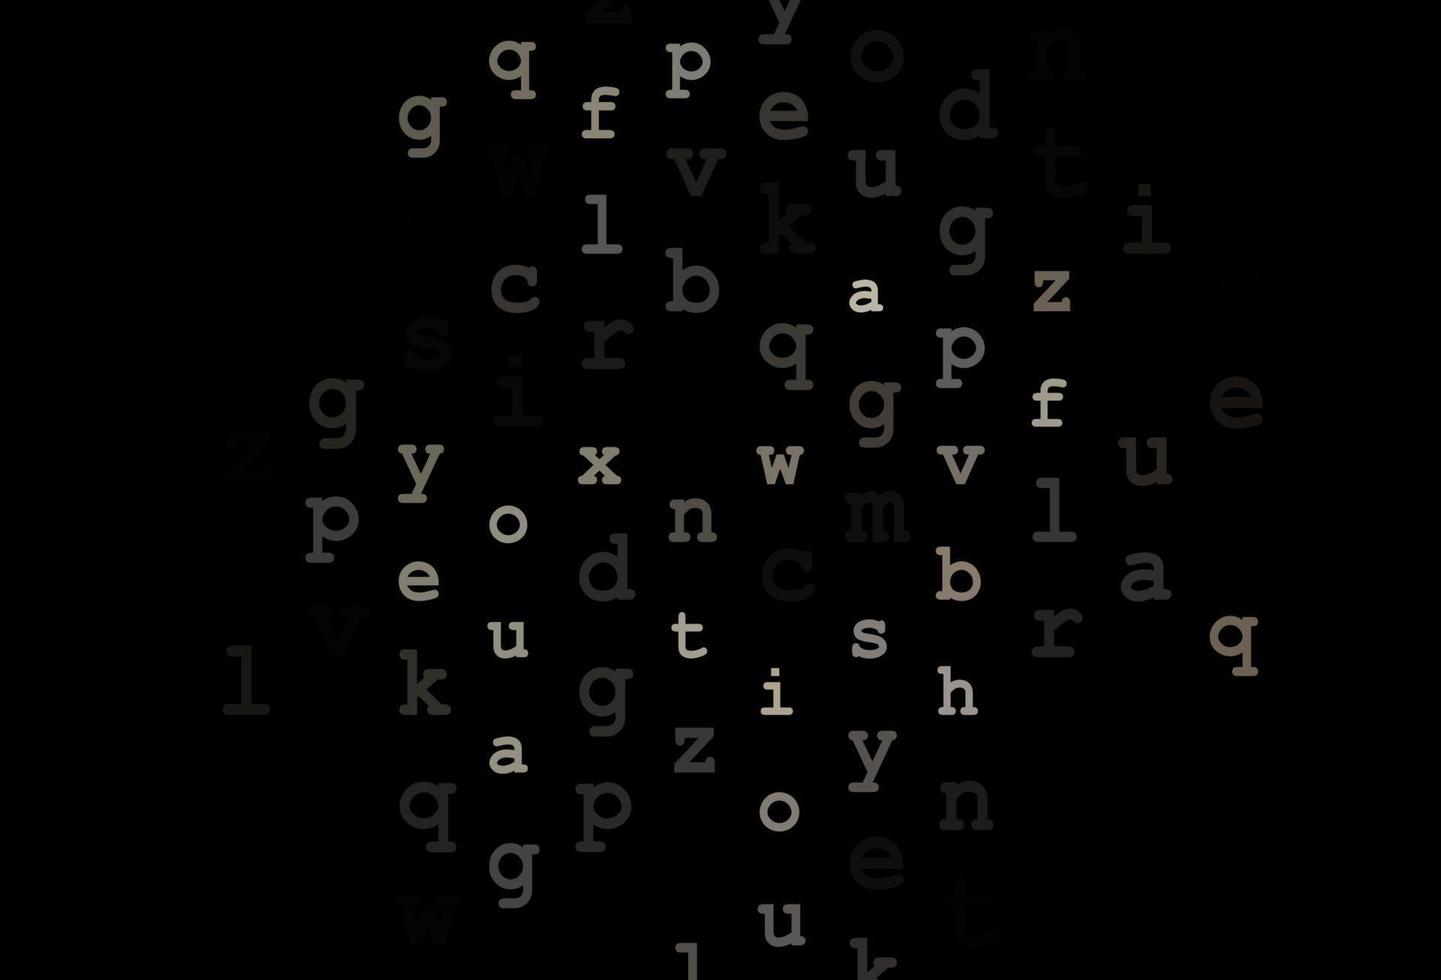 fond de vecteur noir foncé avec des signes de l'alphabet.